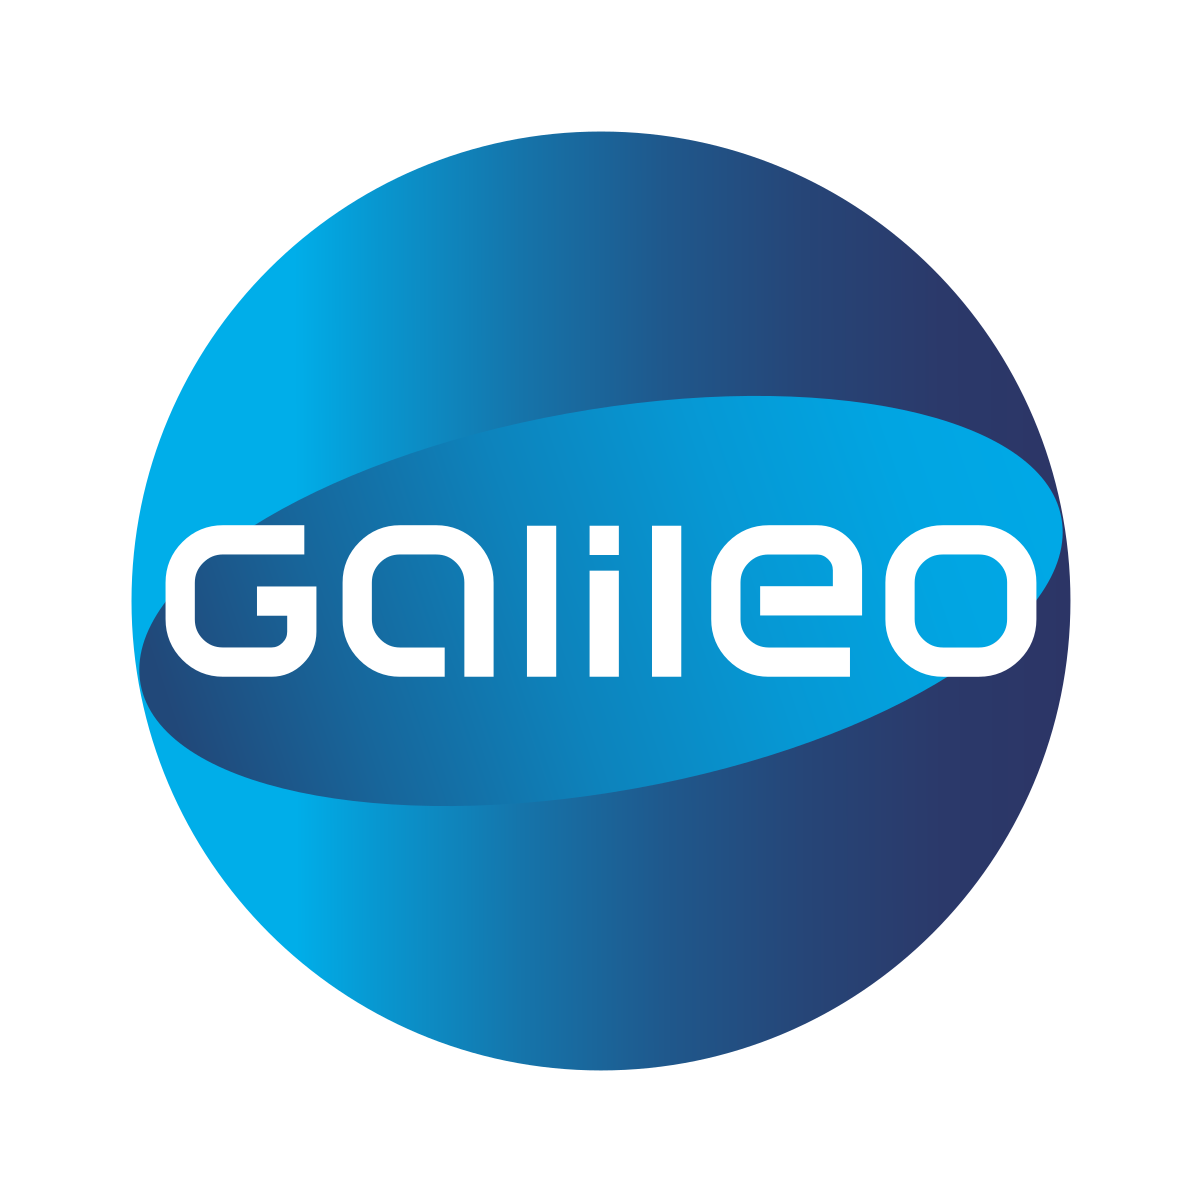 Galileo_Logo